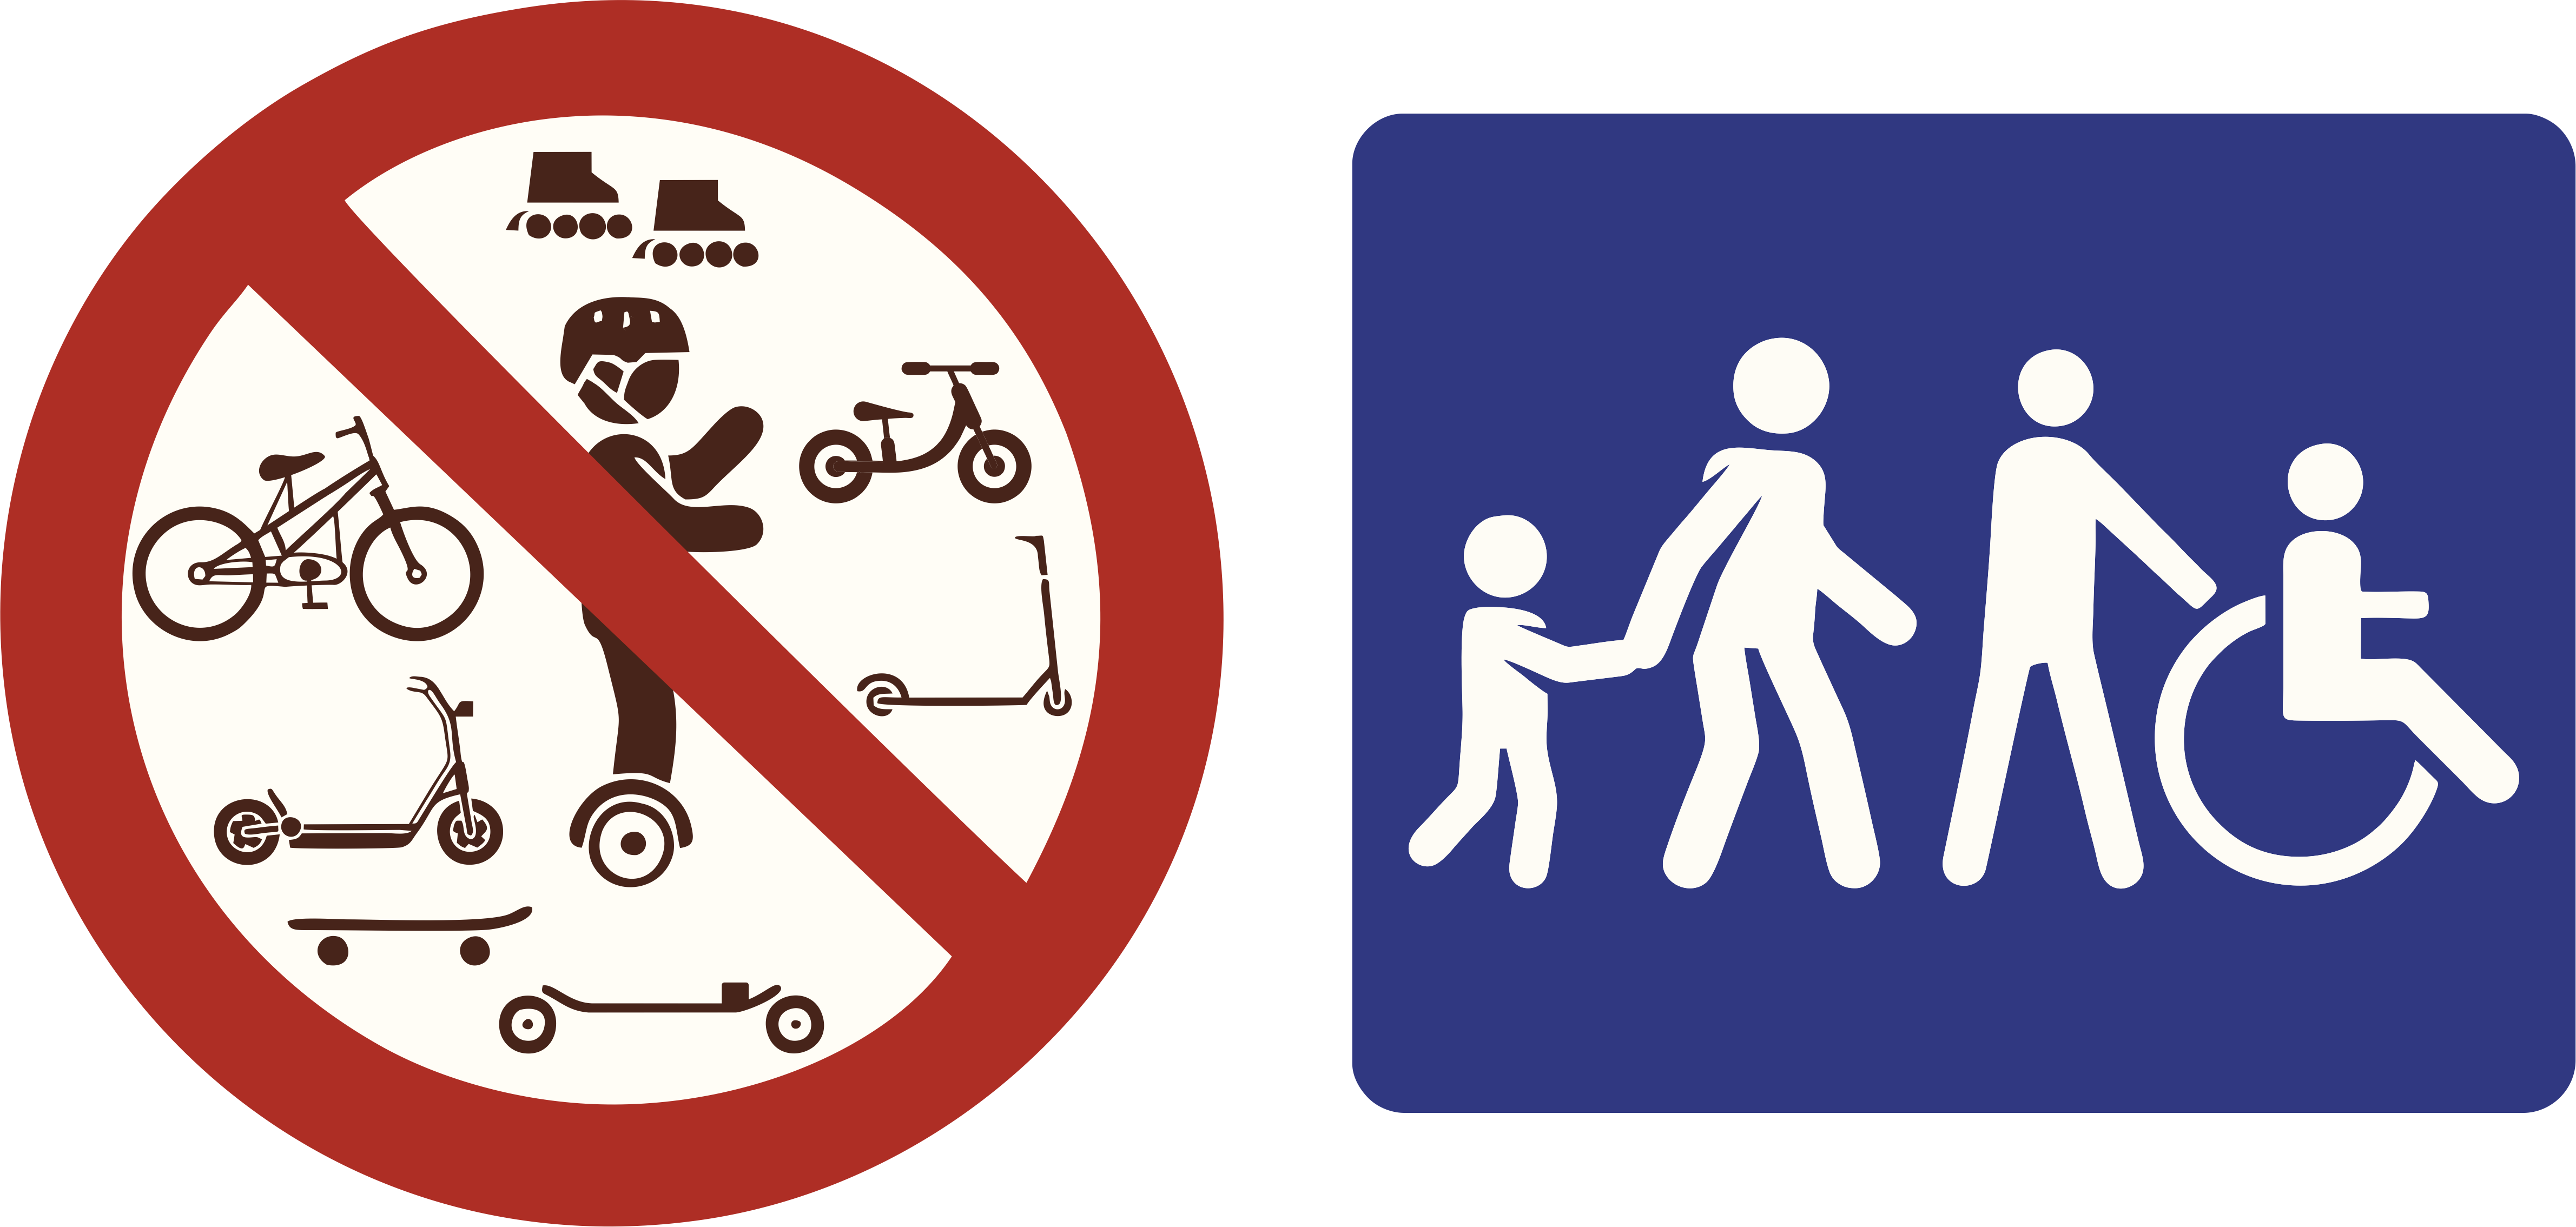 Interdiction des engins sur roues, circulation à pieds uniquement.